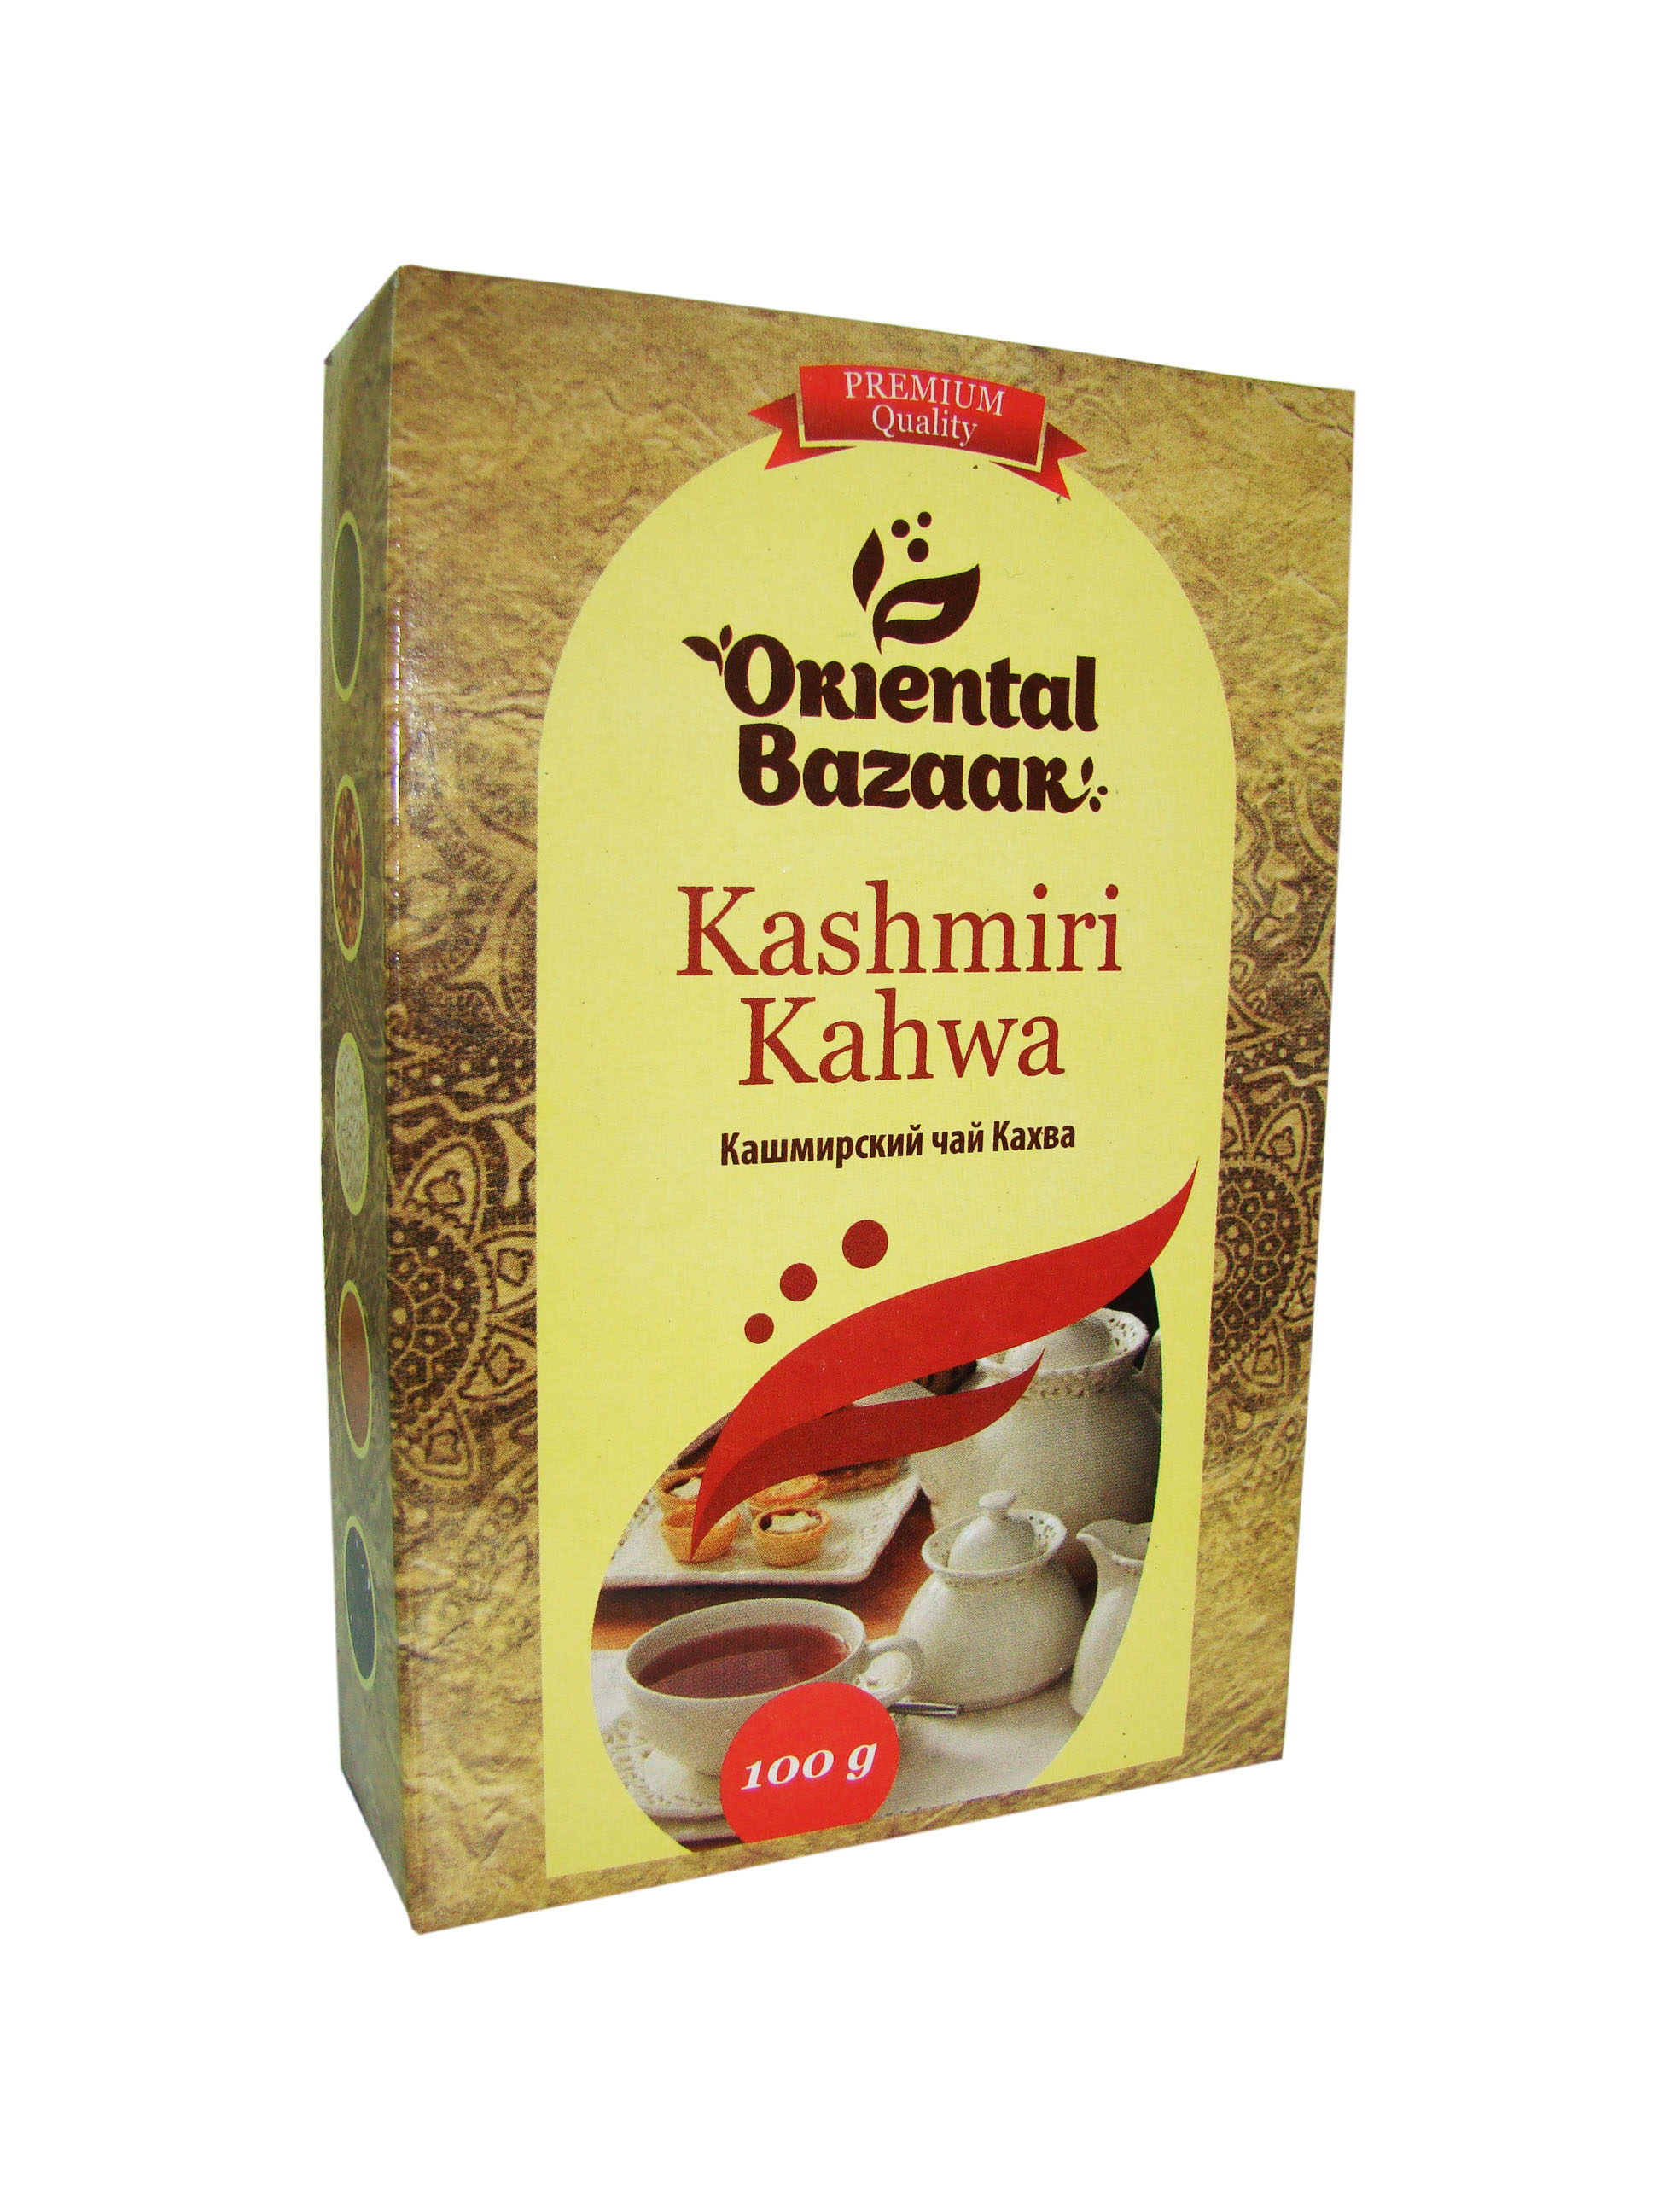 Kashmiri Kahwa / Кашмирский чай Кахва 100 гр